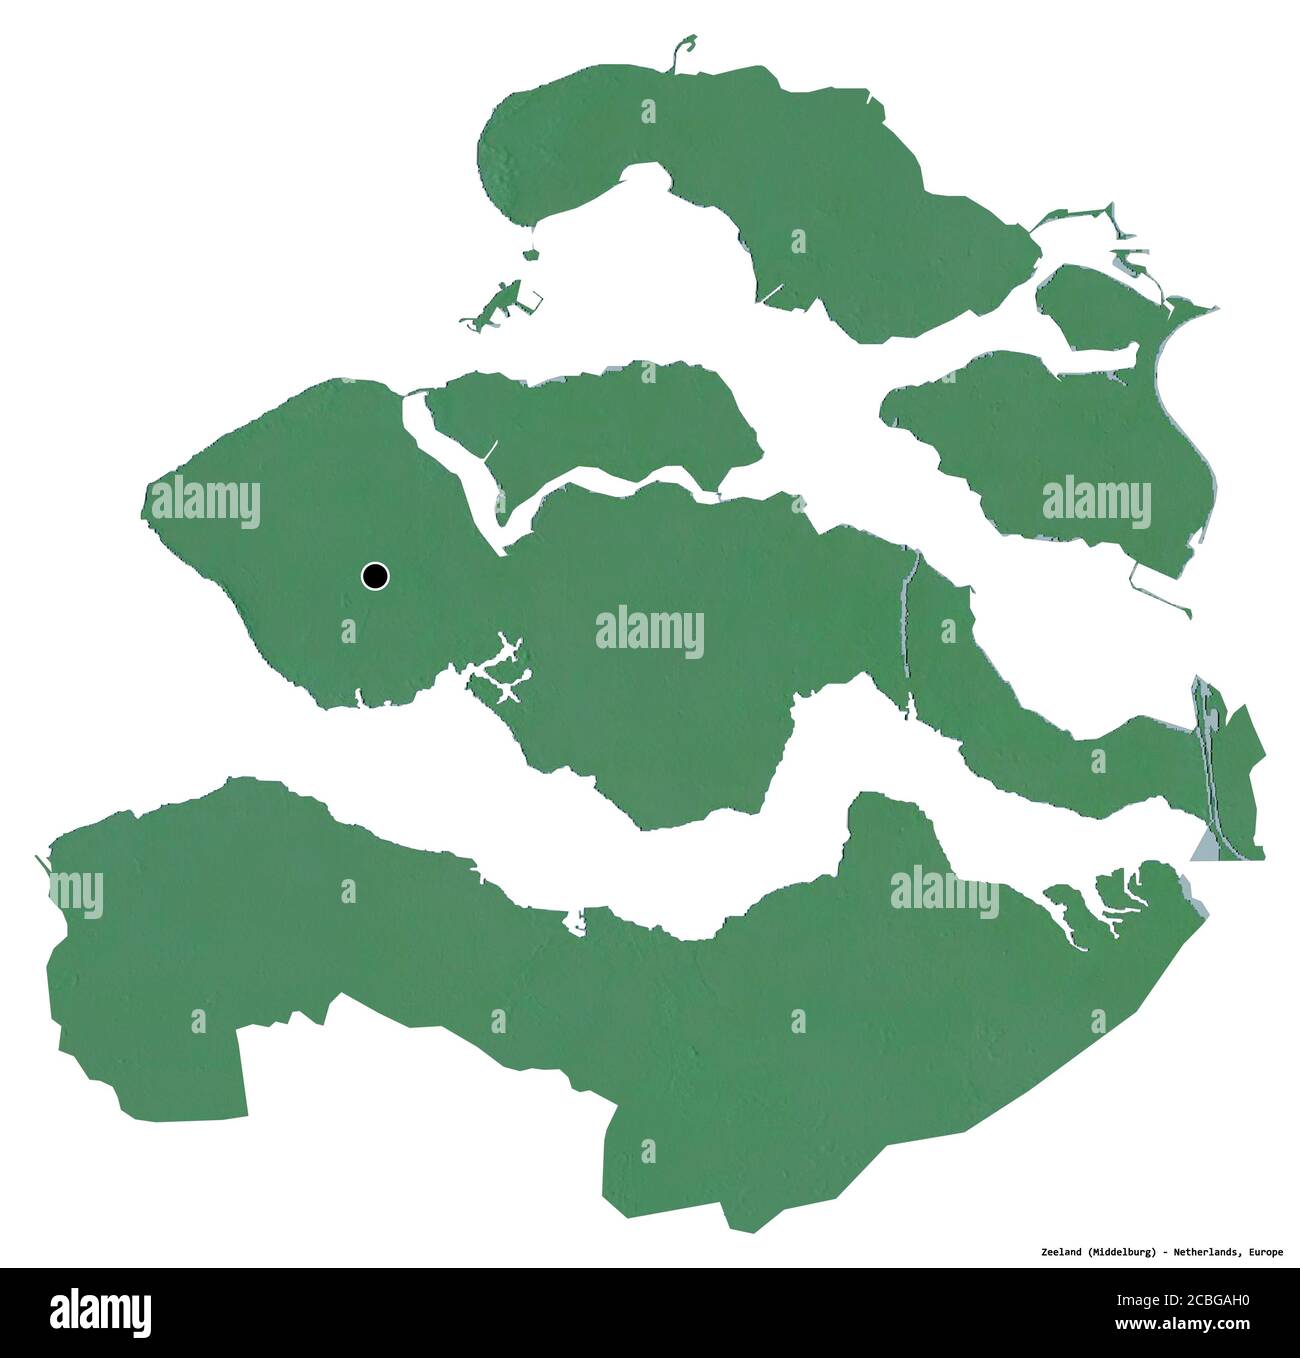 Forme de Zélande, province des pays-Bas, avec sa capitale isolée sur fond blanc. Carte topographique de relief. Rendu 3D Banque D'Images